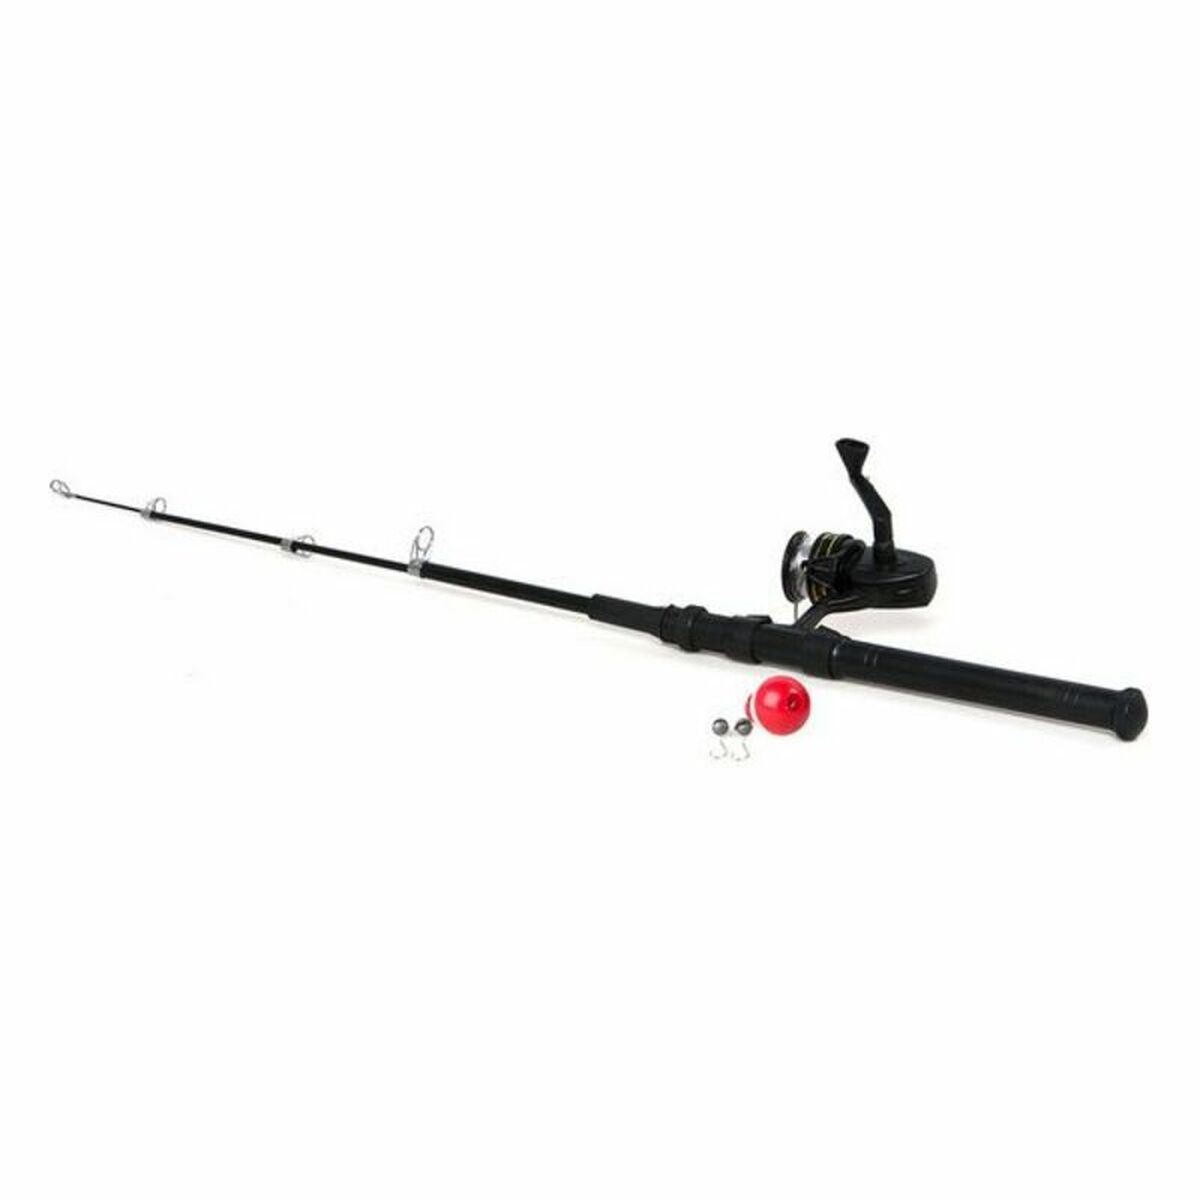 Fishing rod 117958